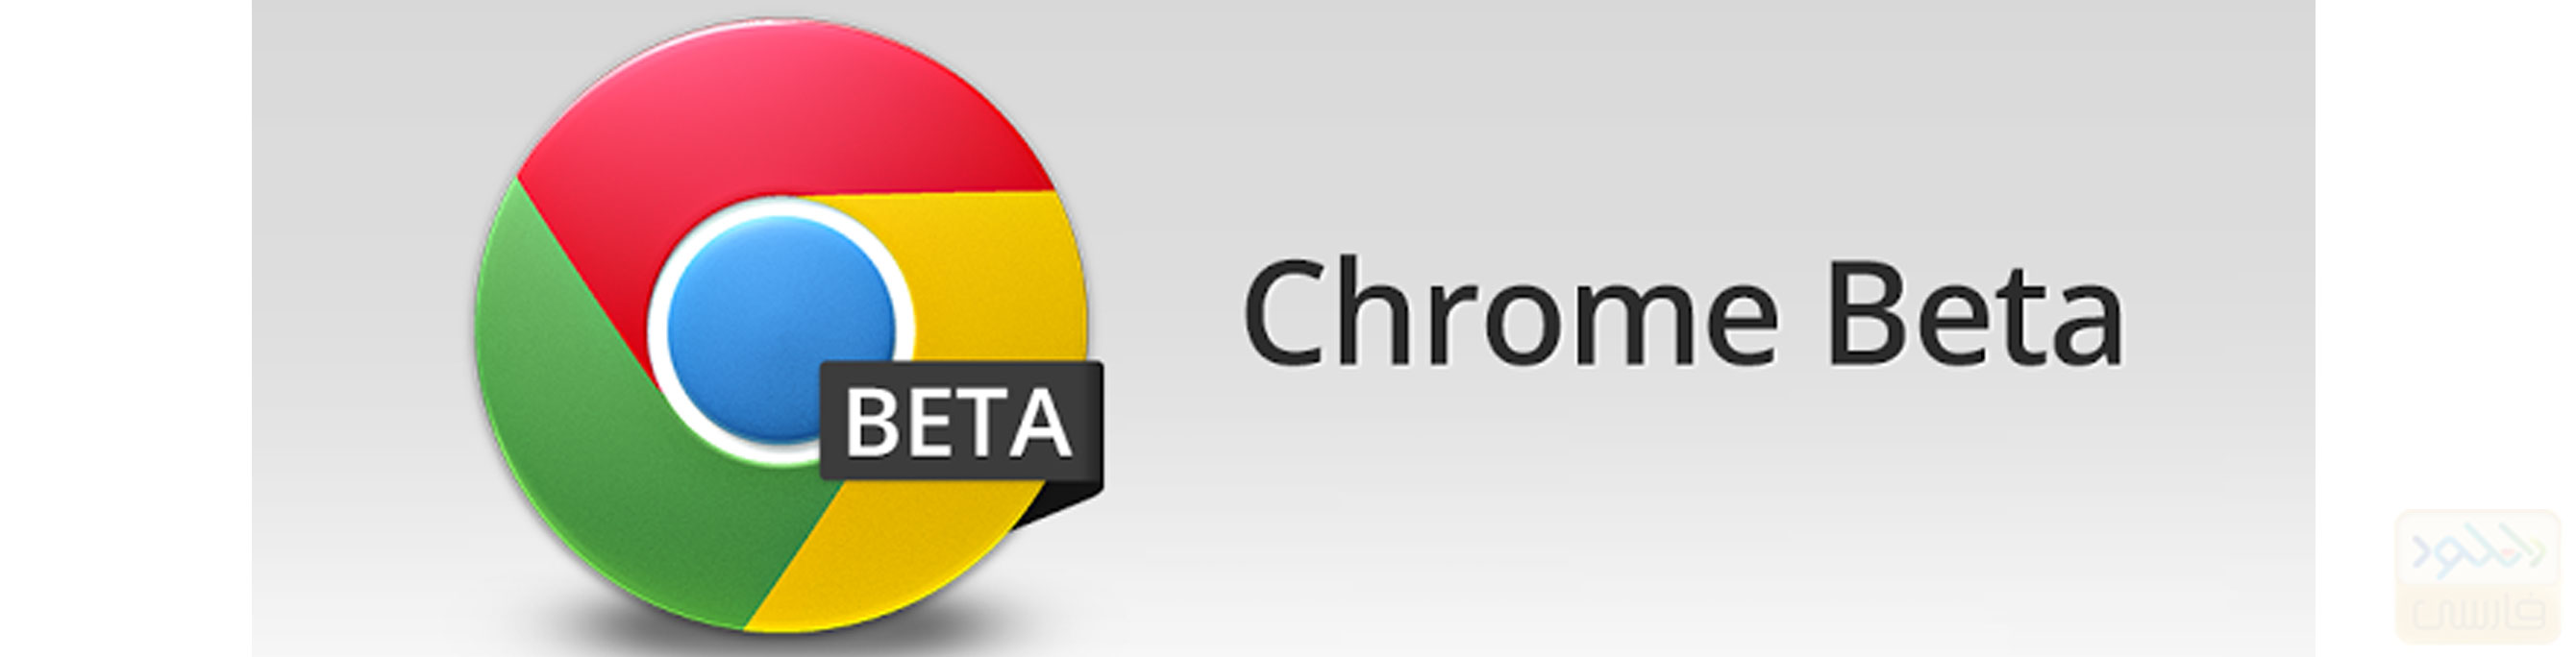 آخرین نسخه نرم افزار Chrome Beta برای اندروید